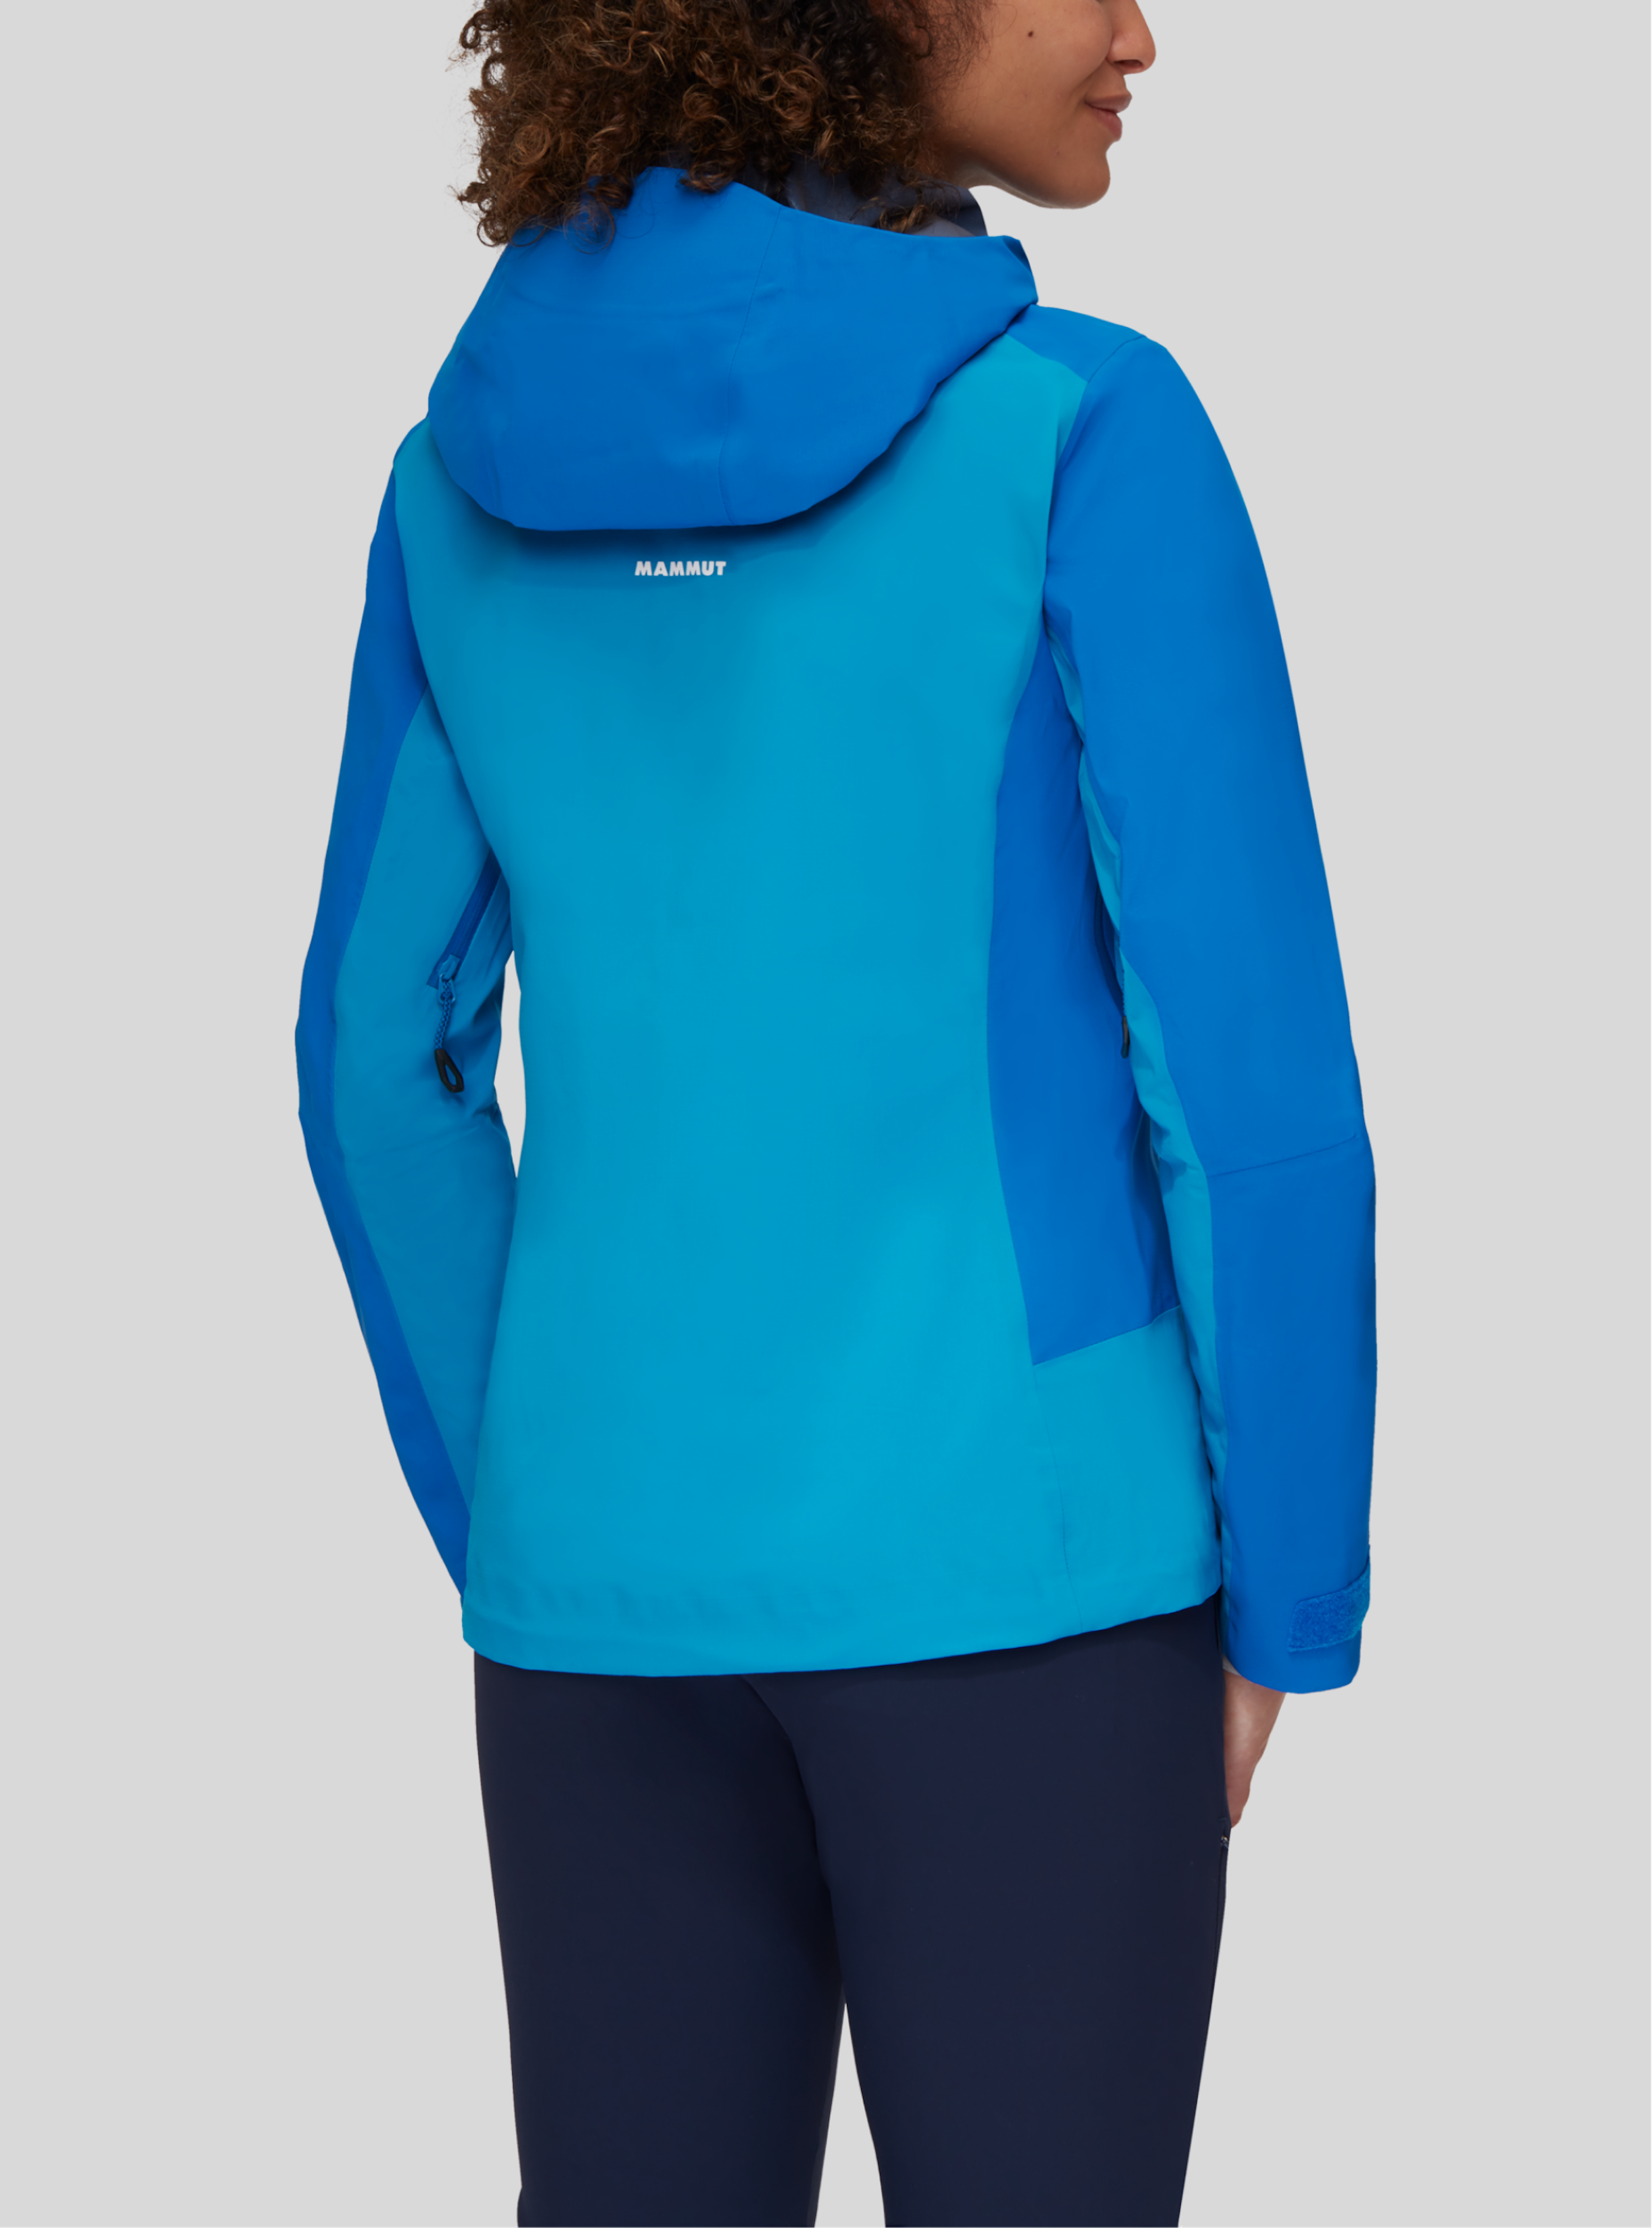 Mammut jacket for women in blue